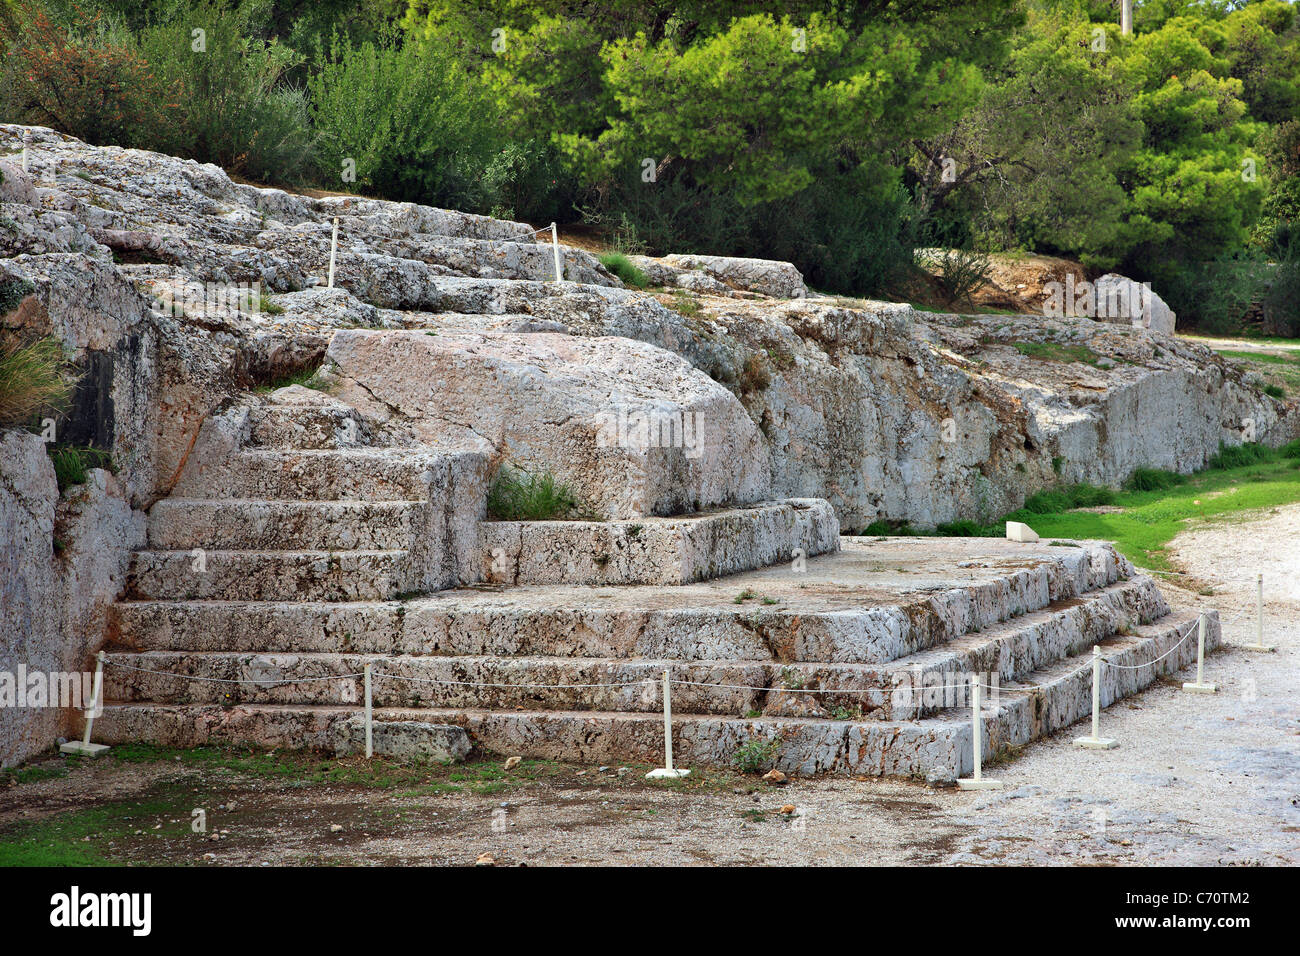 Il 'Bema' o 'Vema' della Pnice, dove i gruppi popolari sono state prendendo il posto nell'antica Atene, Grecia. Foto Stock